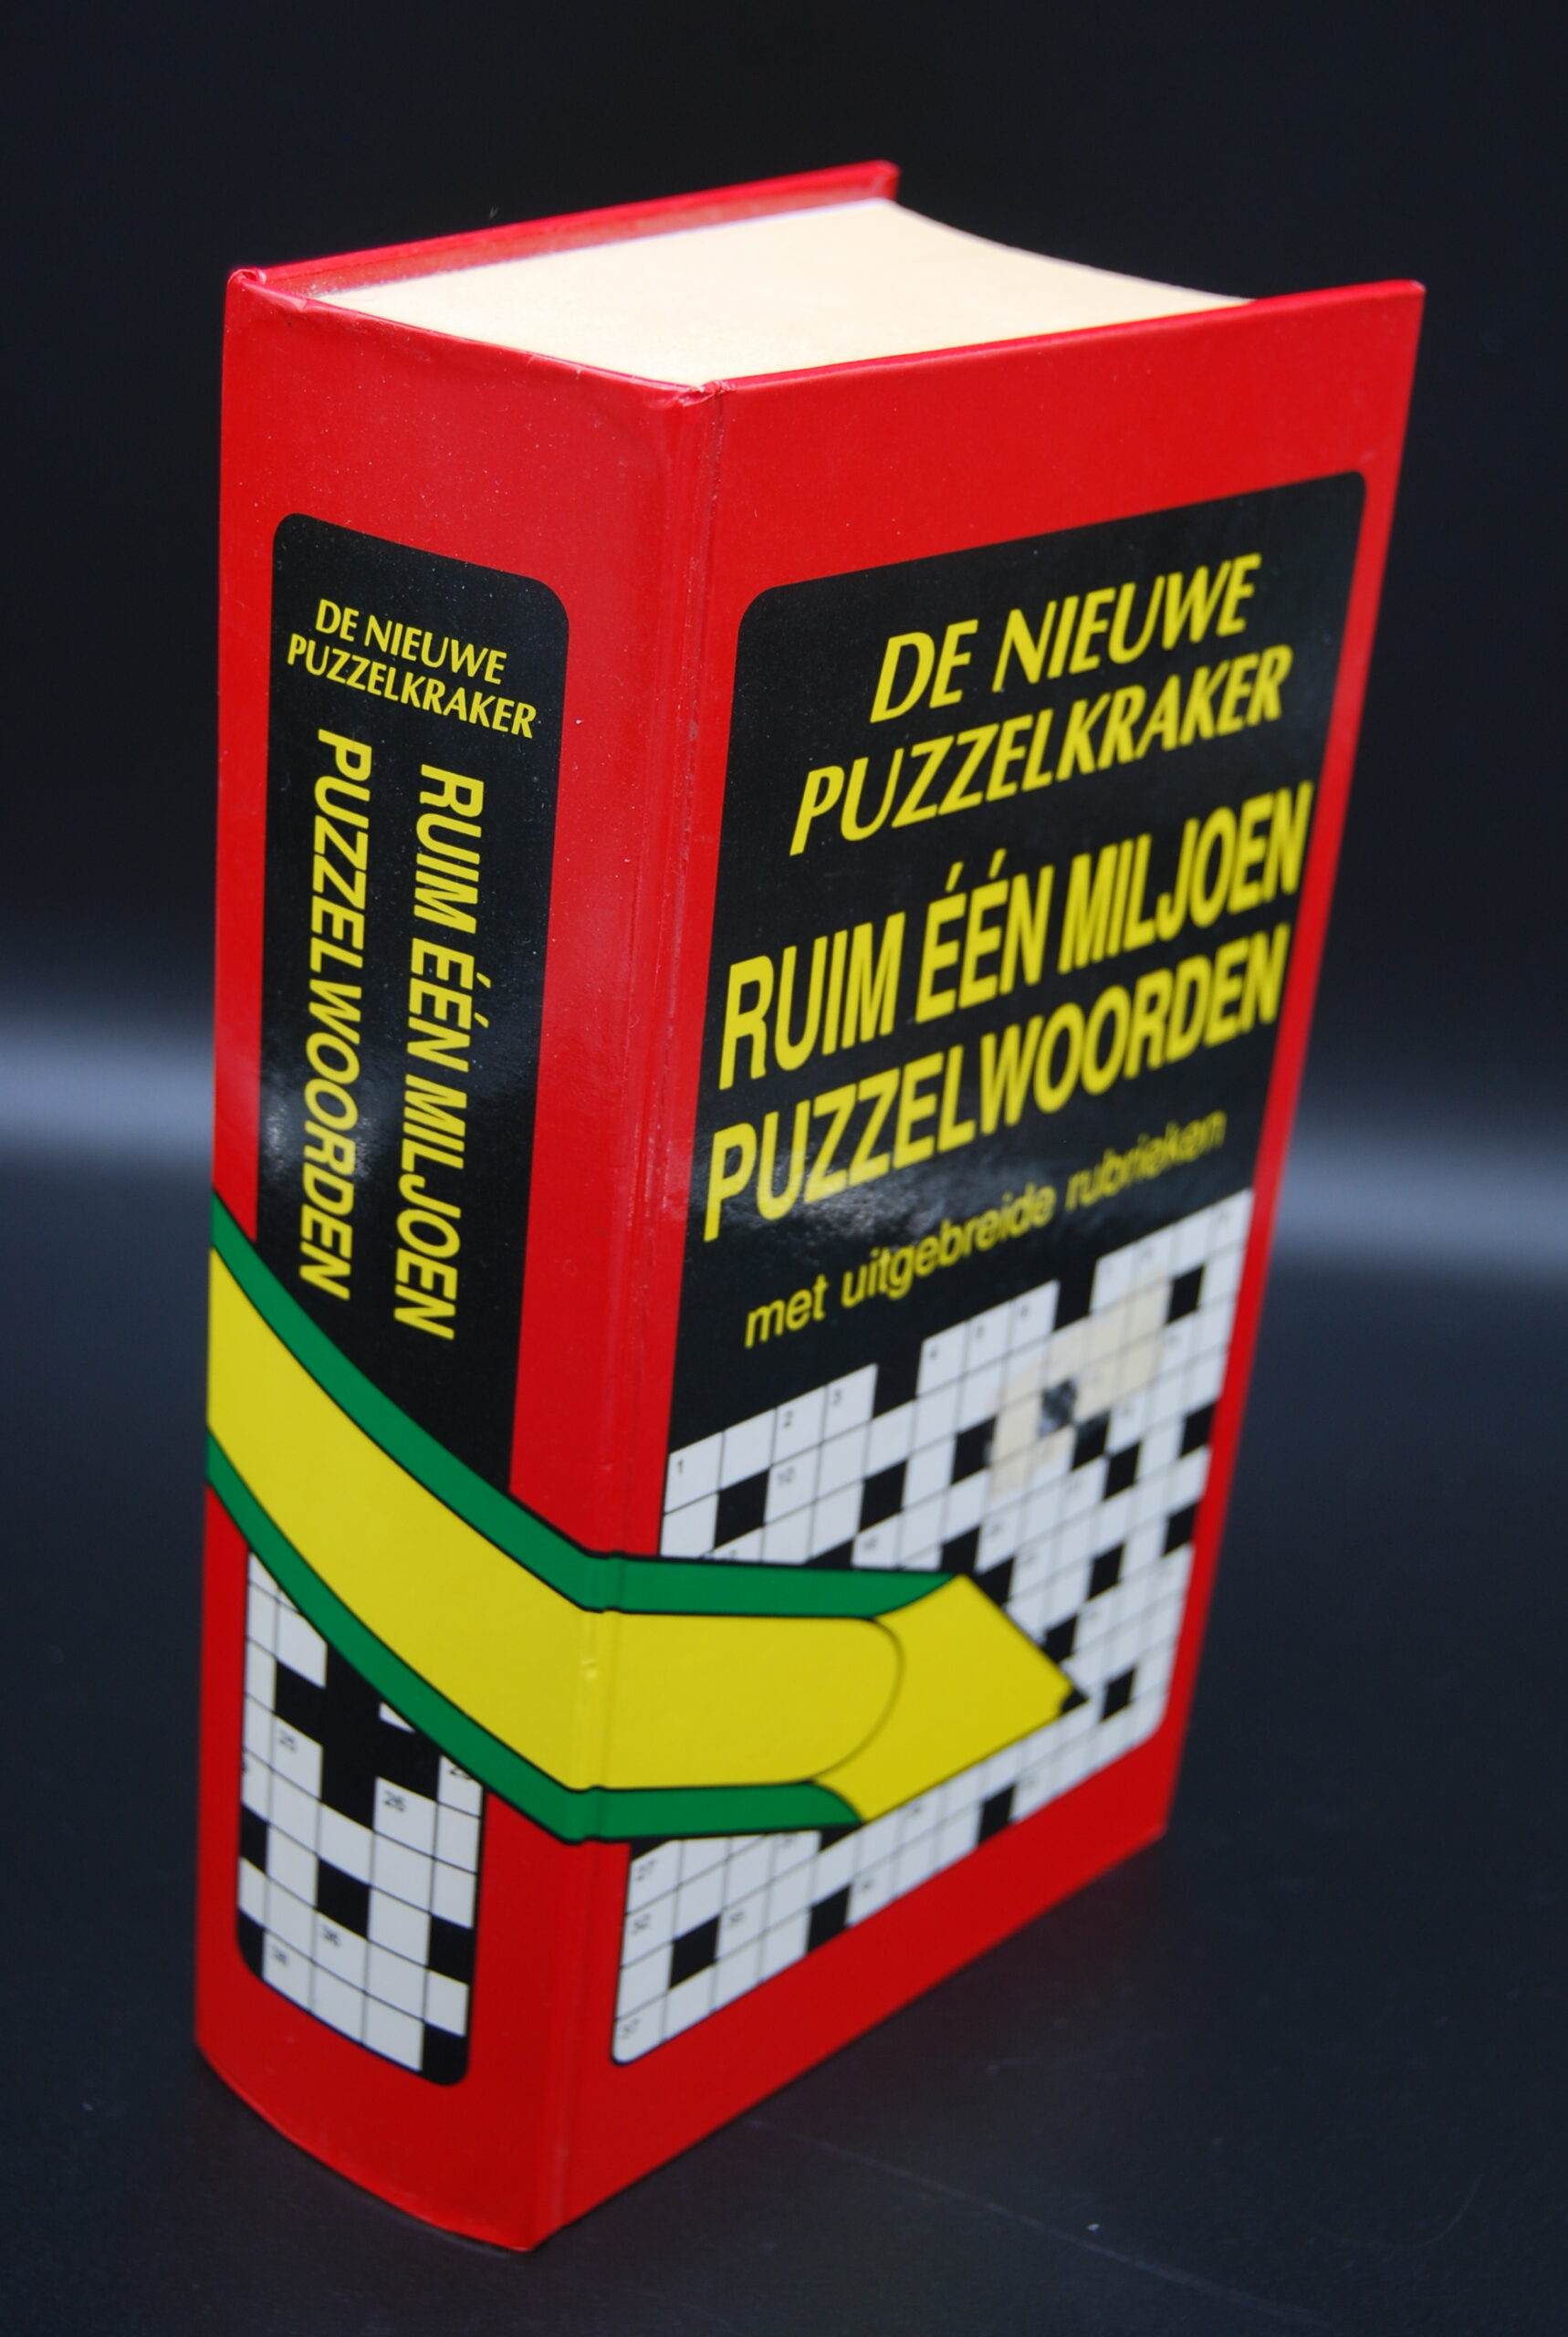 Dressoir Nominaal triatlon Puzzelwoordenboek, Ruim één miljoen puzzelwoorden | What's New Today?